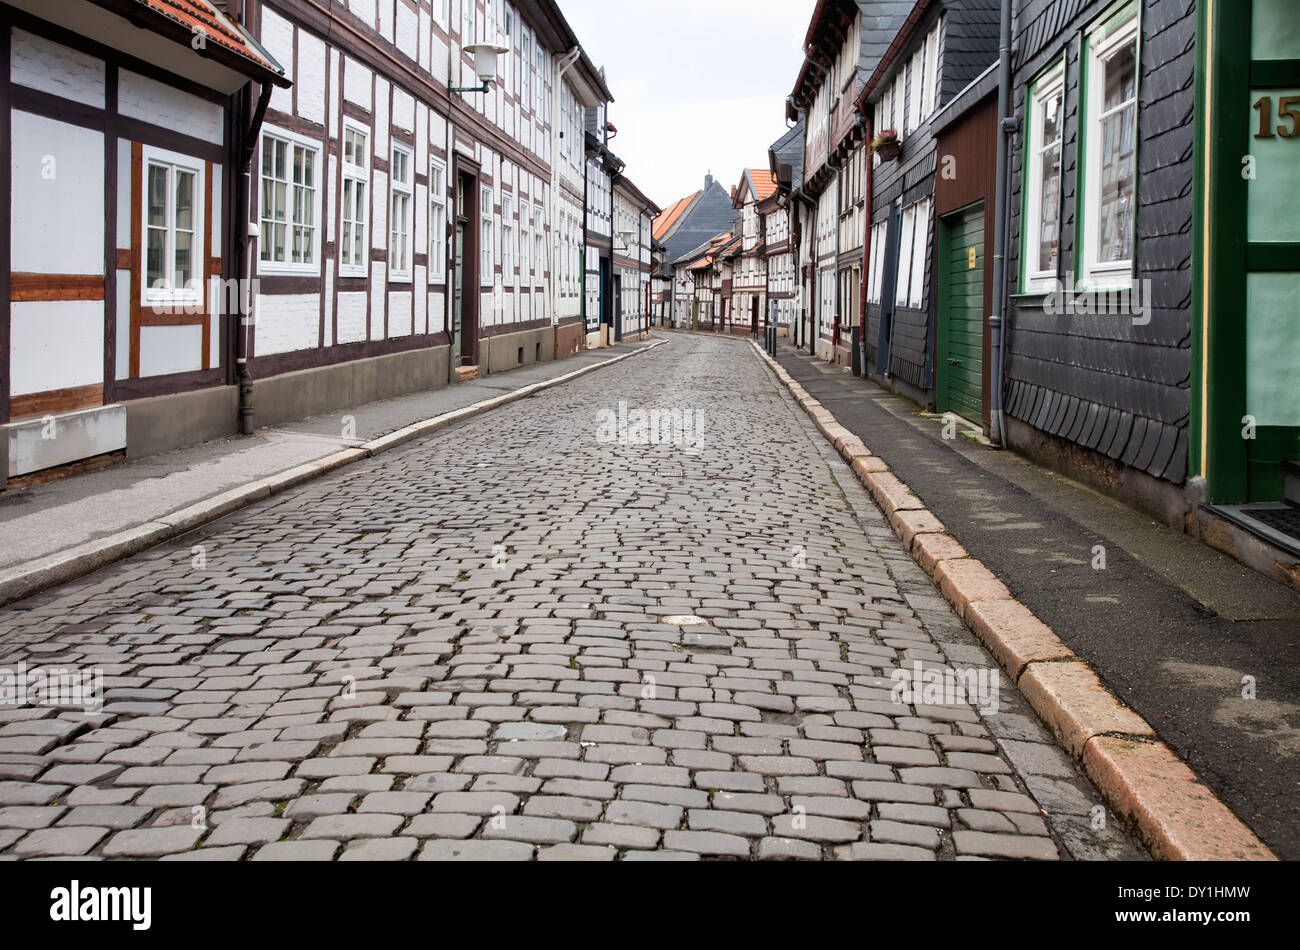 Maisons à colombages dans le centre ville historique, Goslar, Harz, Basse-Saxe, Allemagne, Europe Banque D'Images